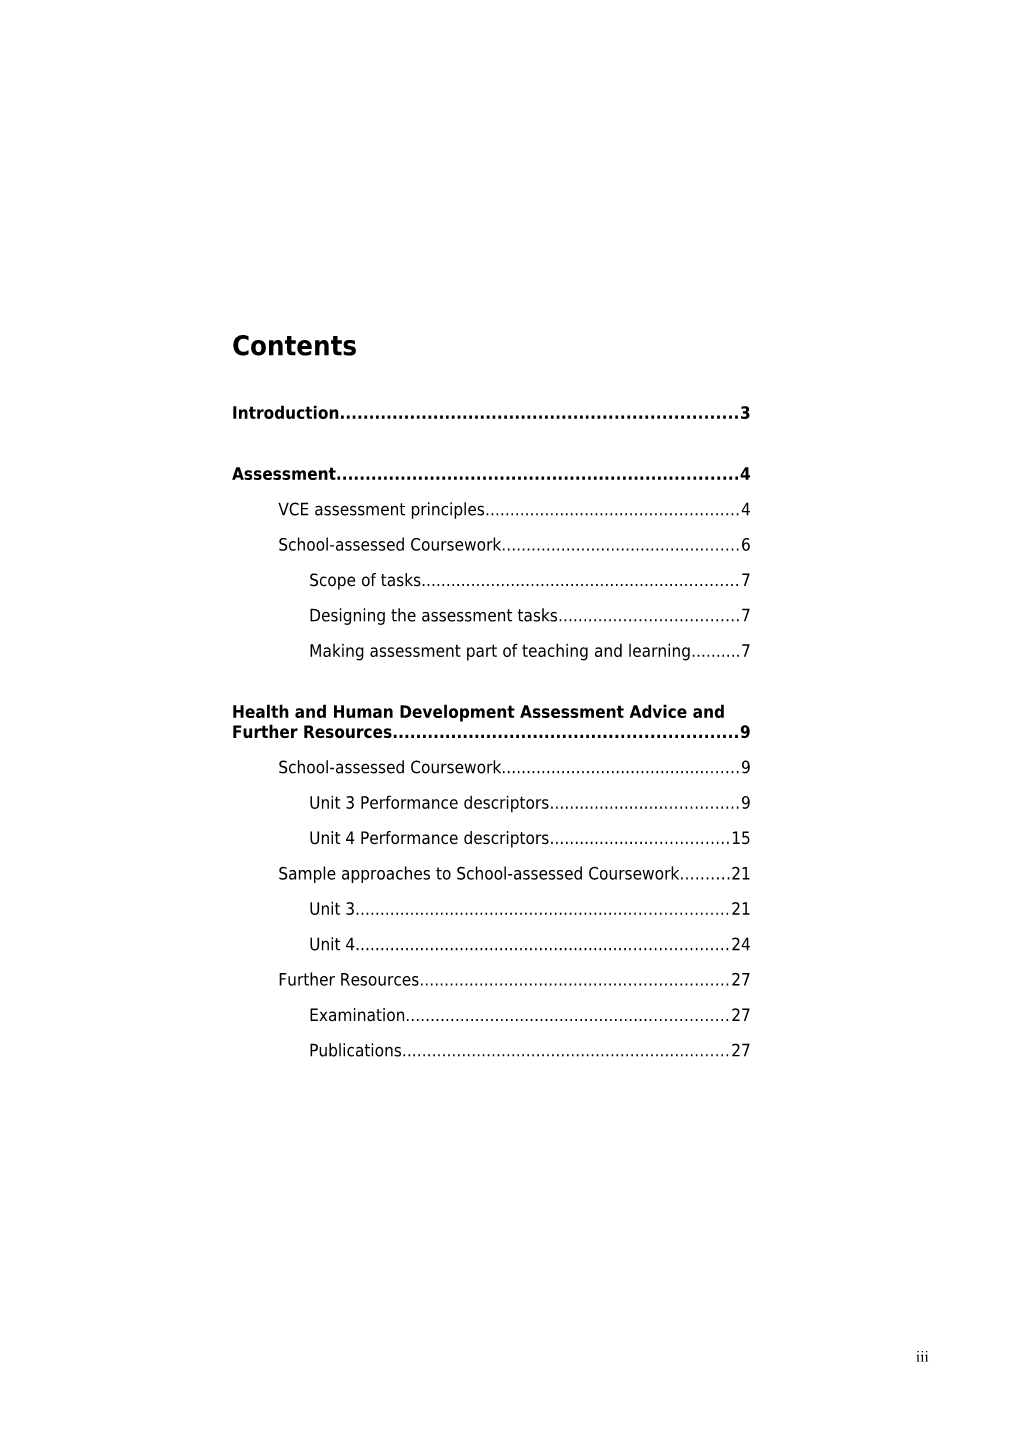 VCE Health and Human Development Assessment Handbook 2010-2013